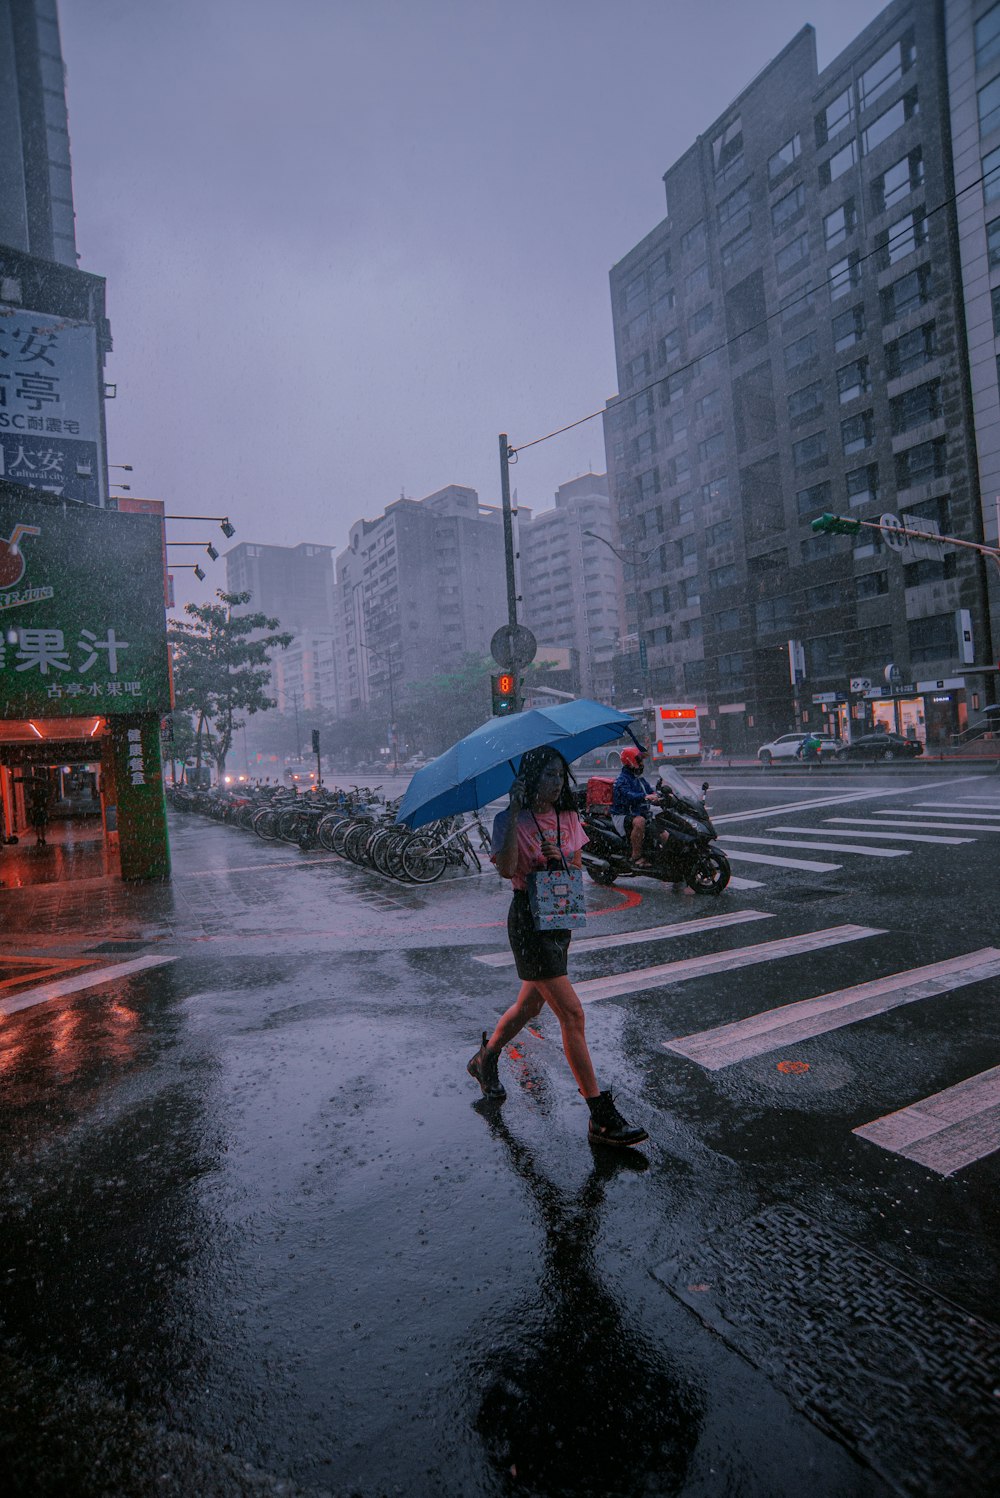 a woman walking across a street holding an umbrella